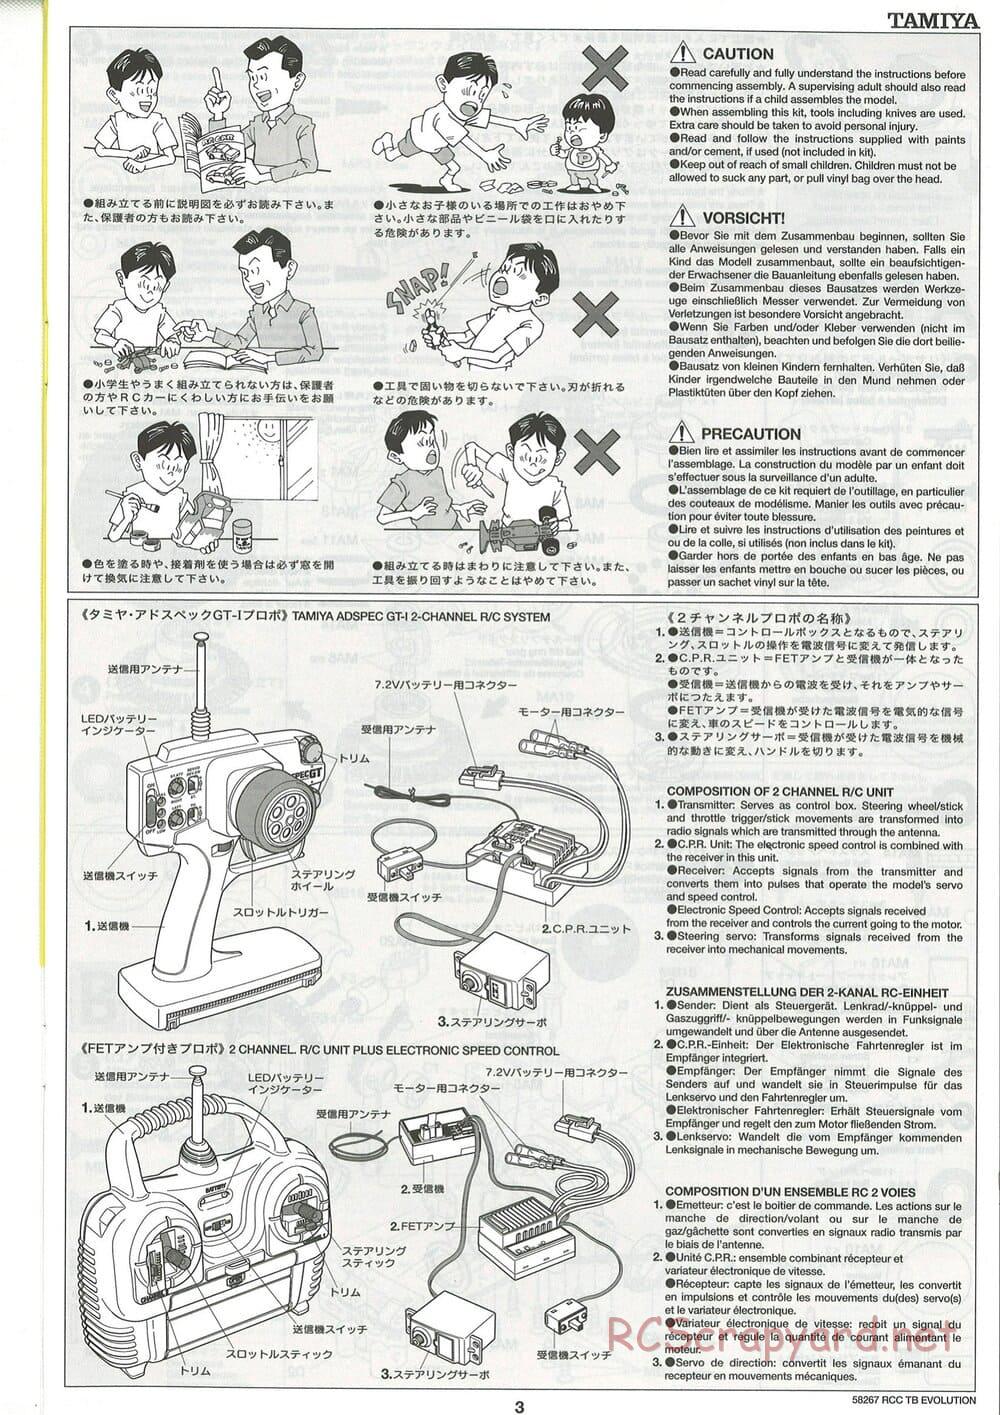 Tamiya - TB Evolution Chassis - Manual - Page 3